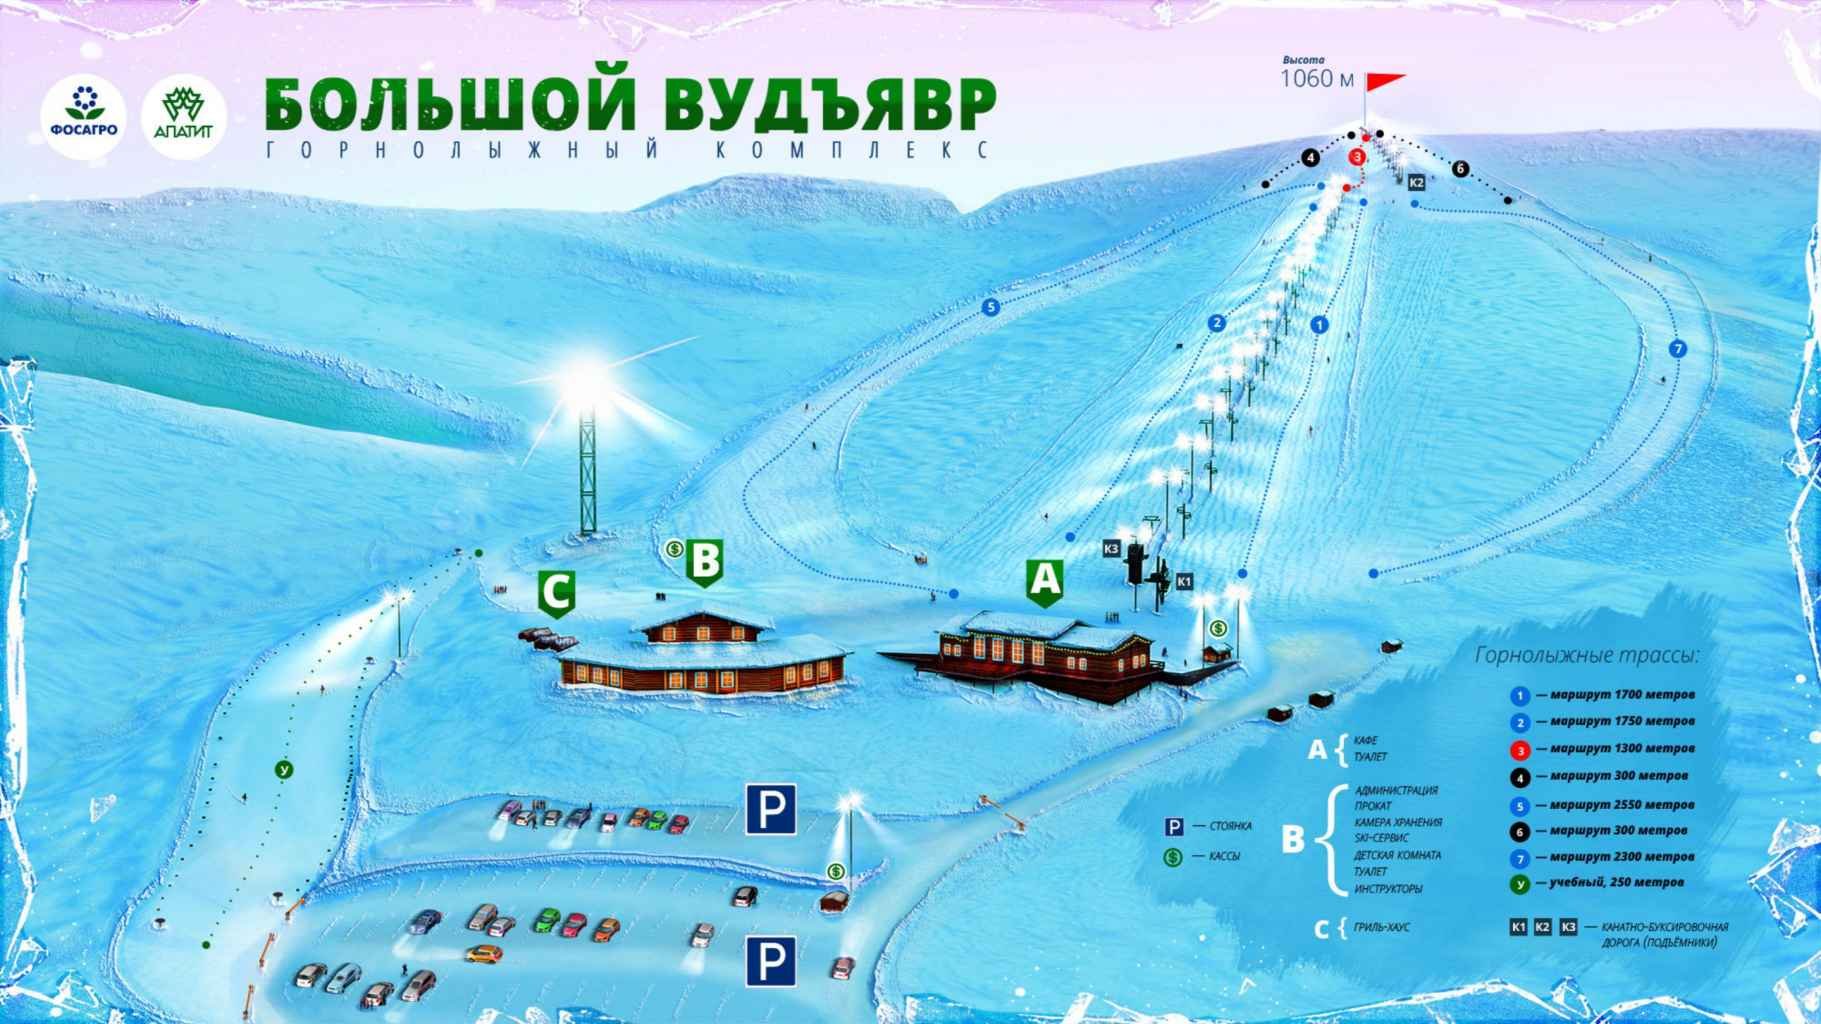 хибины горнолыжный курорт официальный сайт